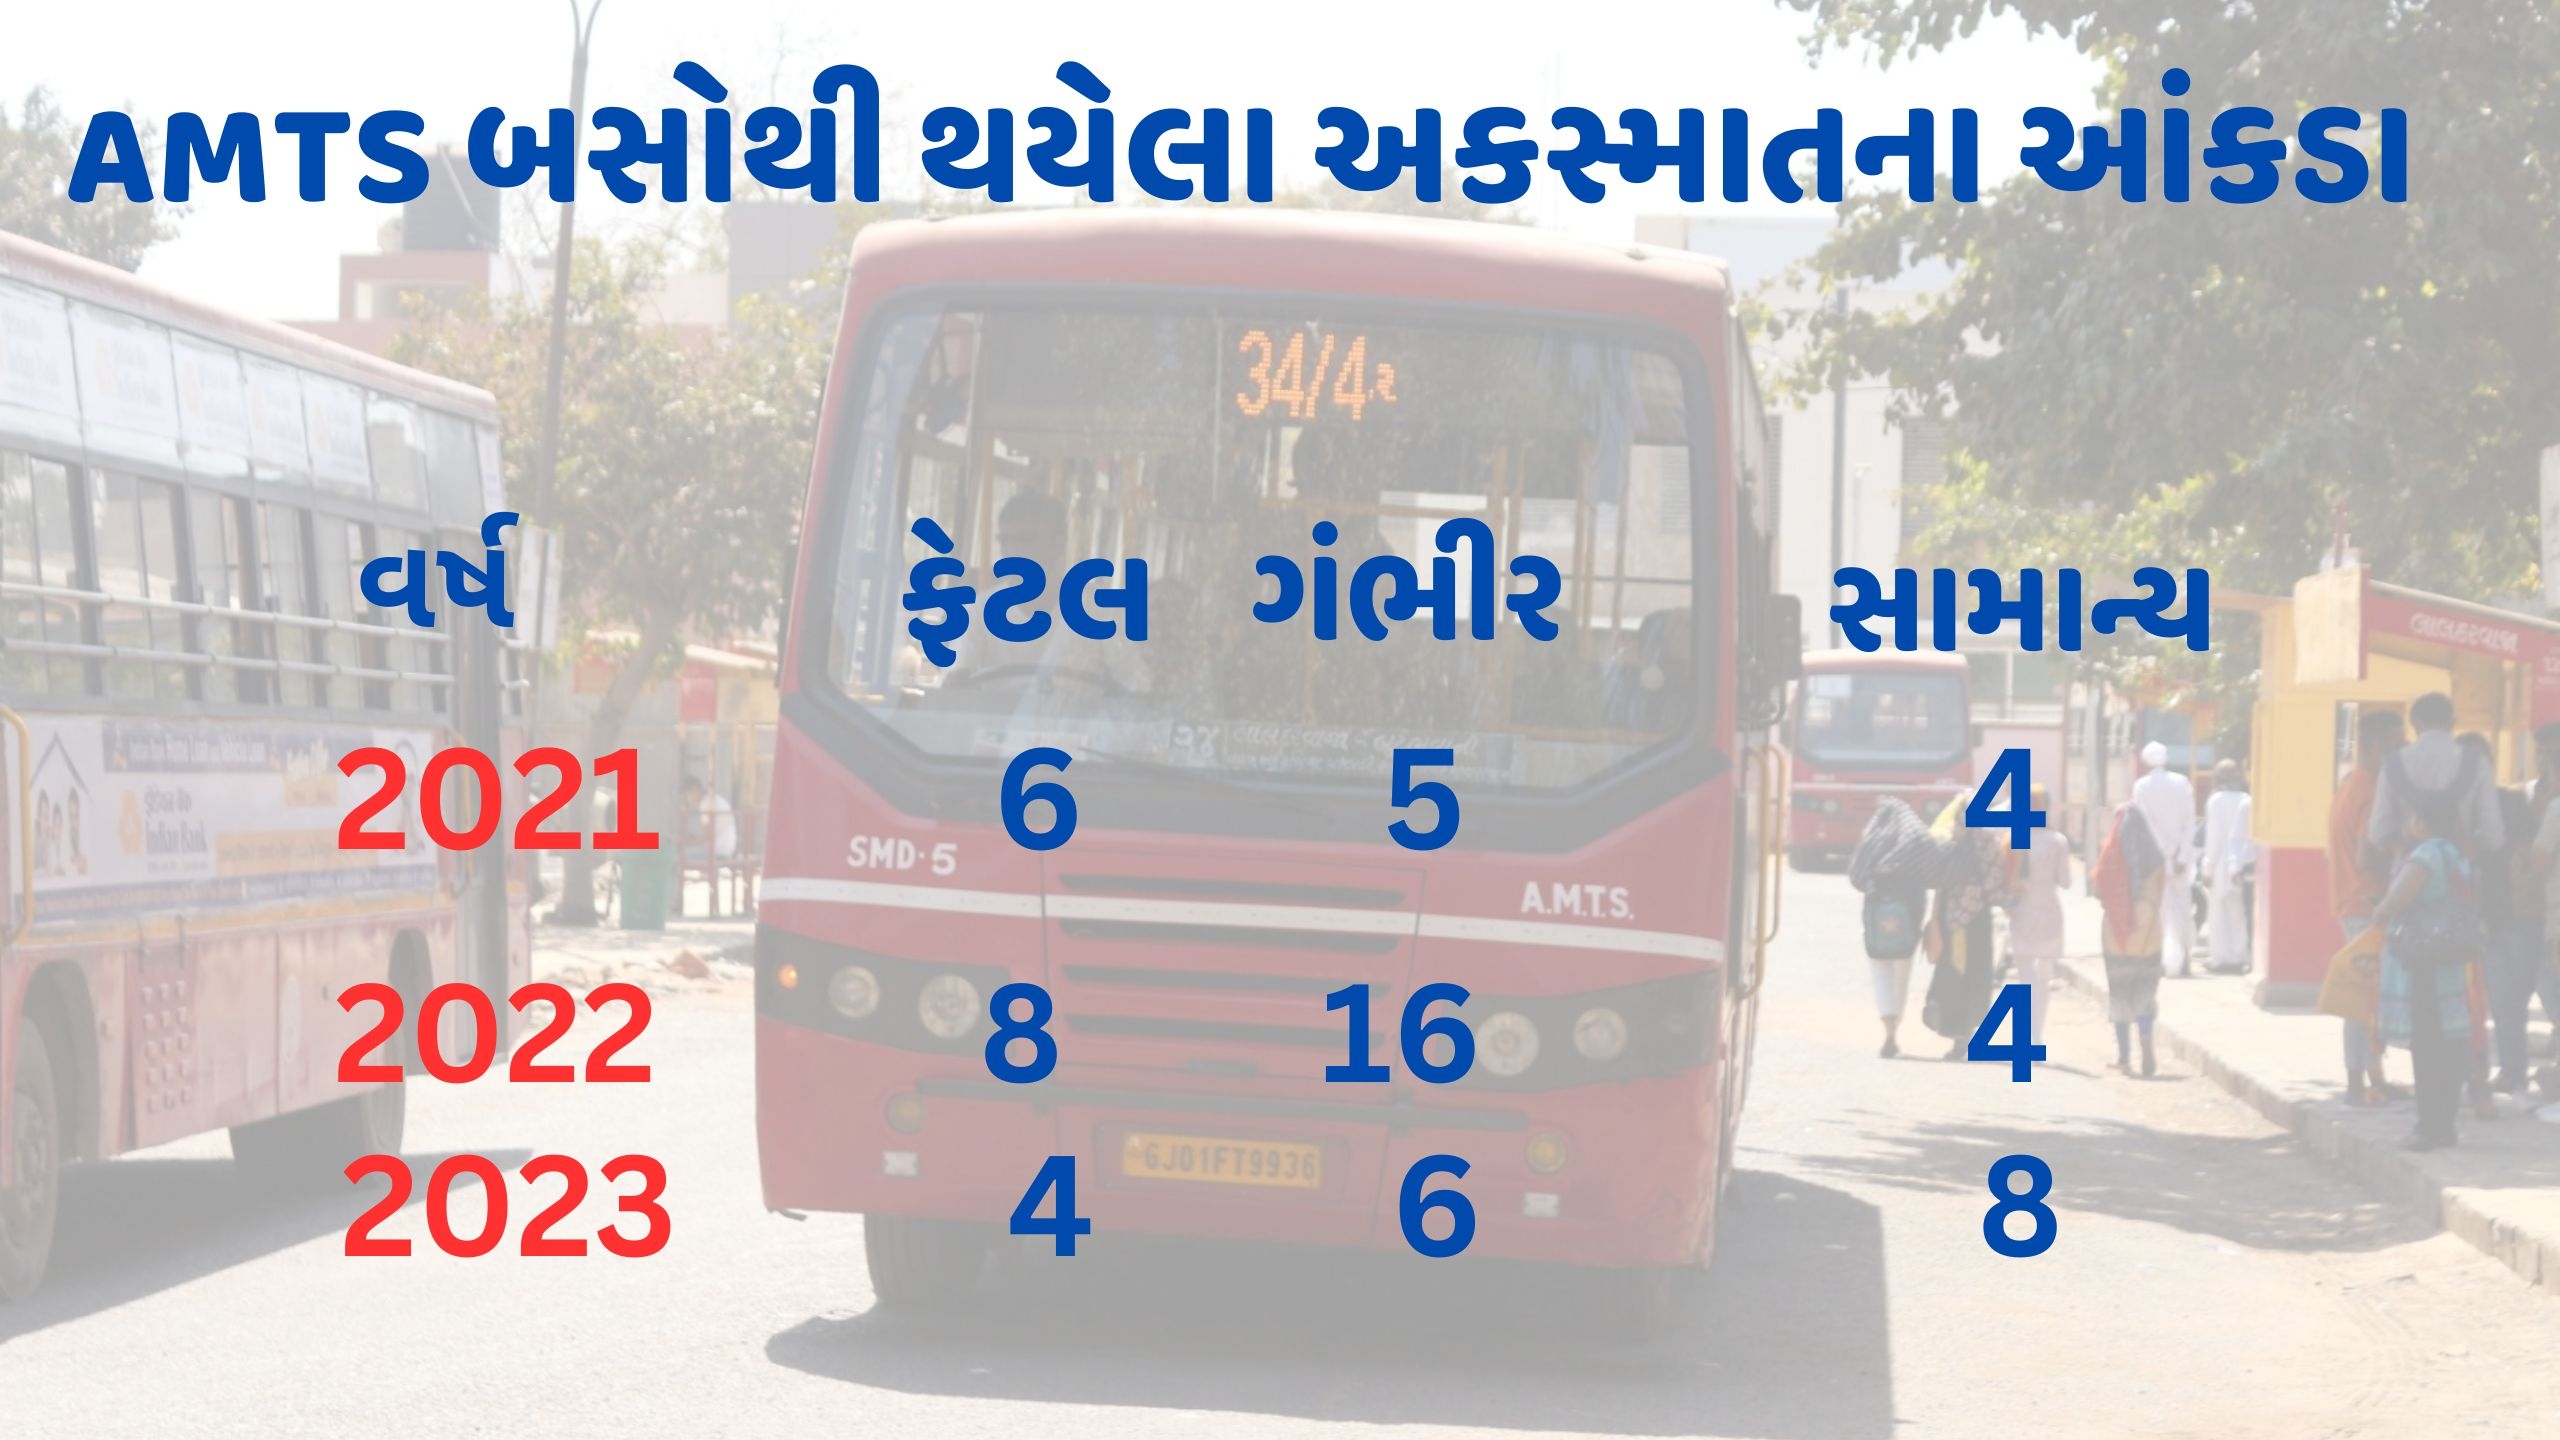 AMTS BRTS બસ દર મહિને એક શહેરીજનને ભરખી જાય છે